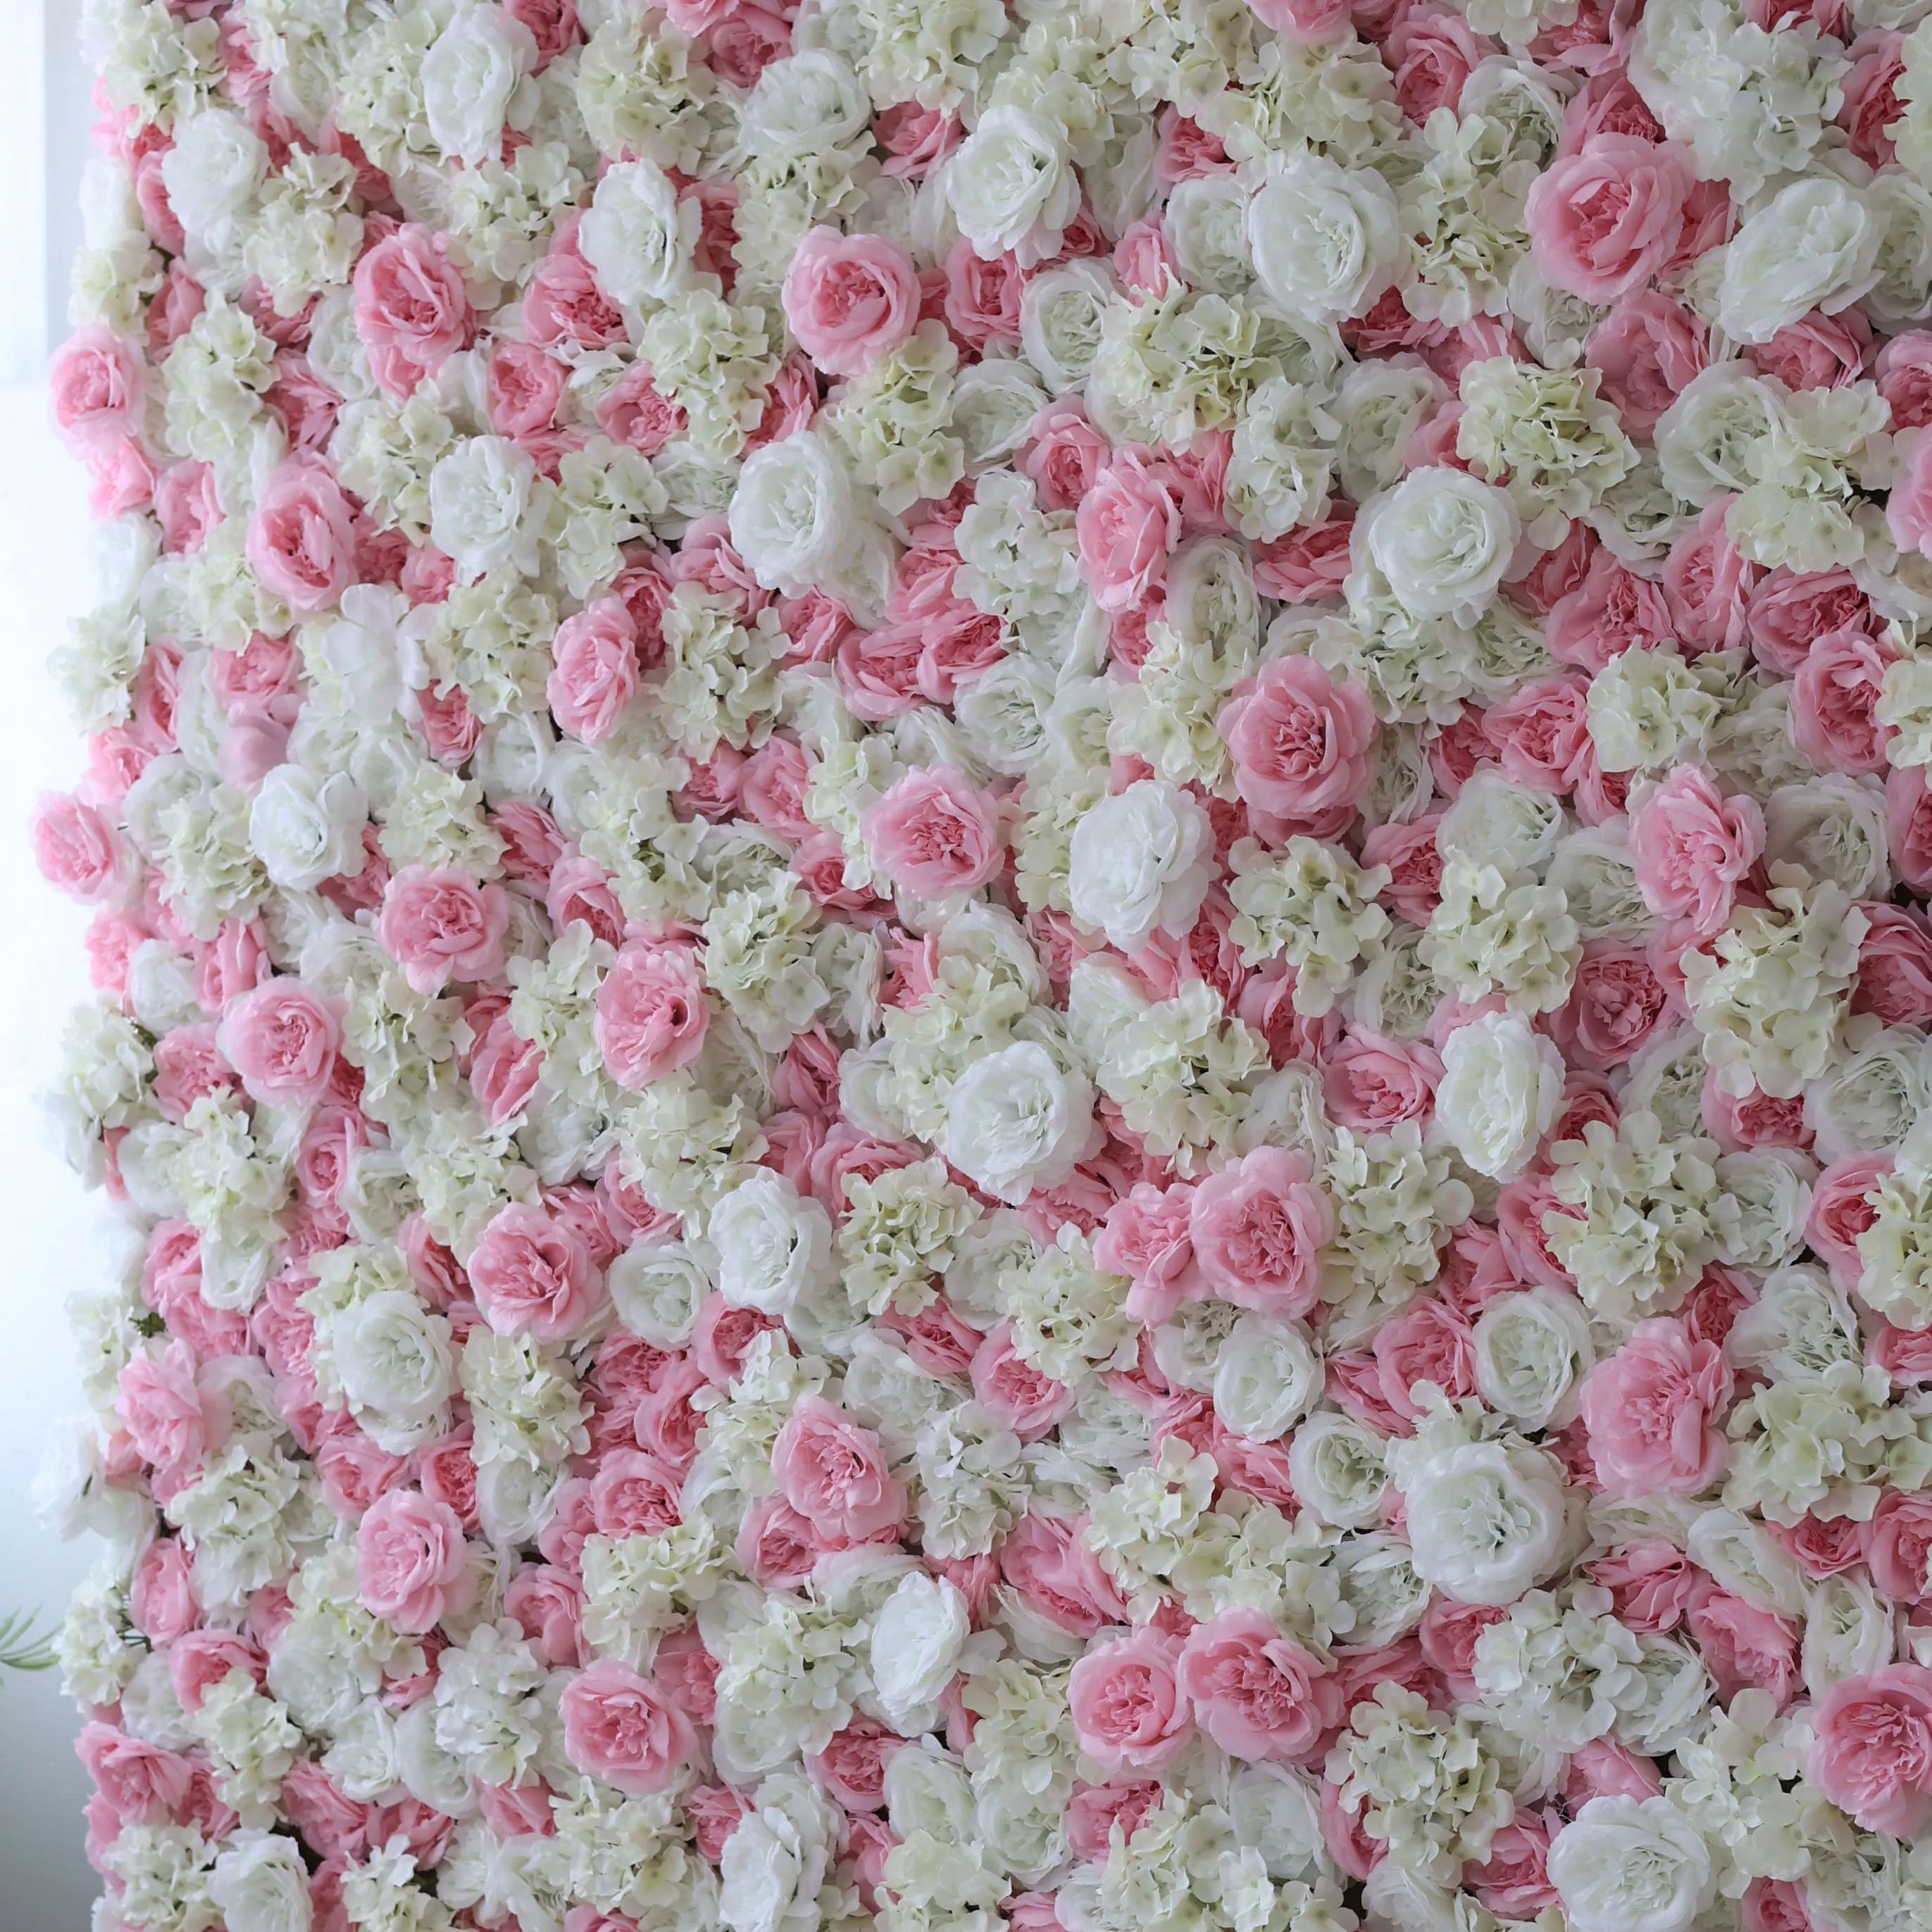 زهور فالار لفة قماش الأوبرا الاصطناعية بألوان وردية وبيضاء خلفية جدار الزفاف ، ديكور حفلات زهور ، حدث